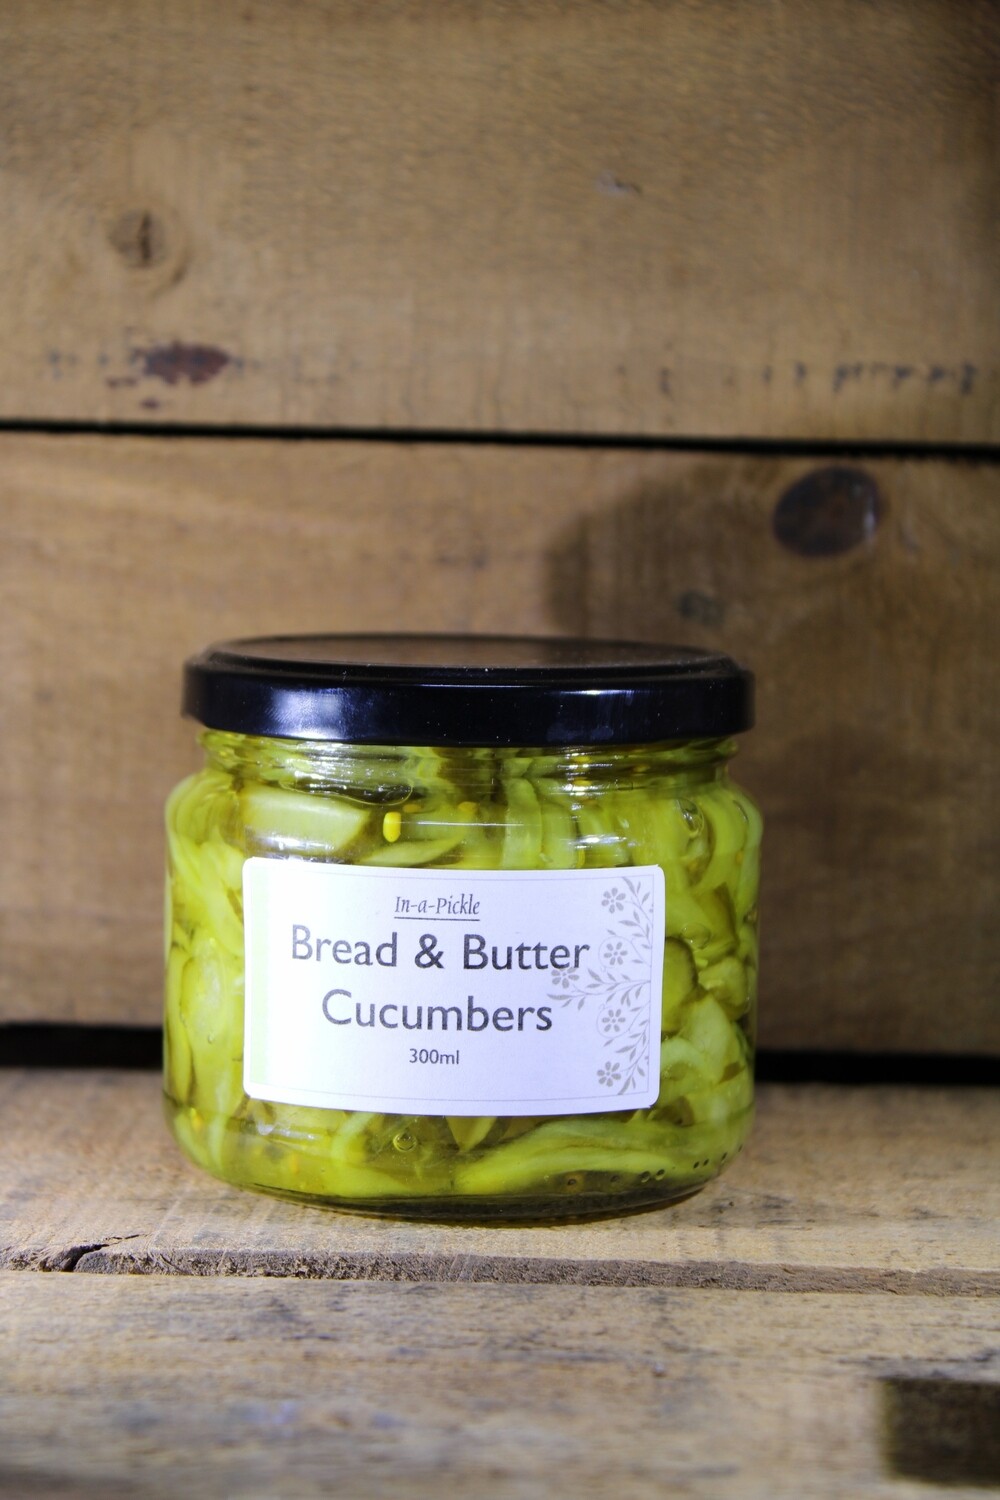 Bread & Butter Cucumbers